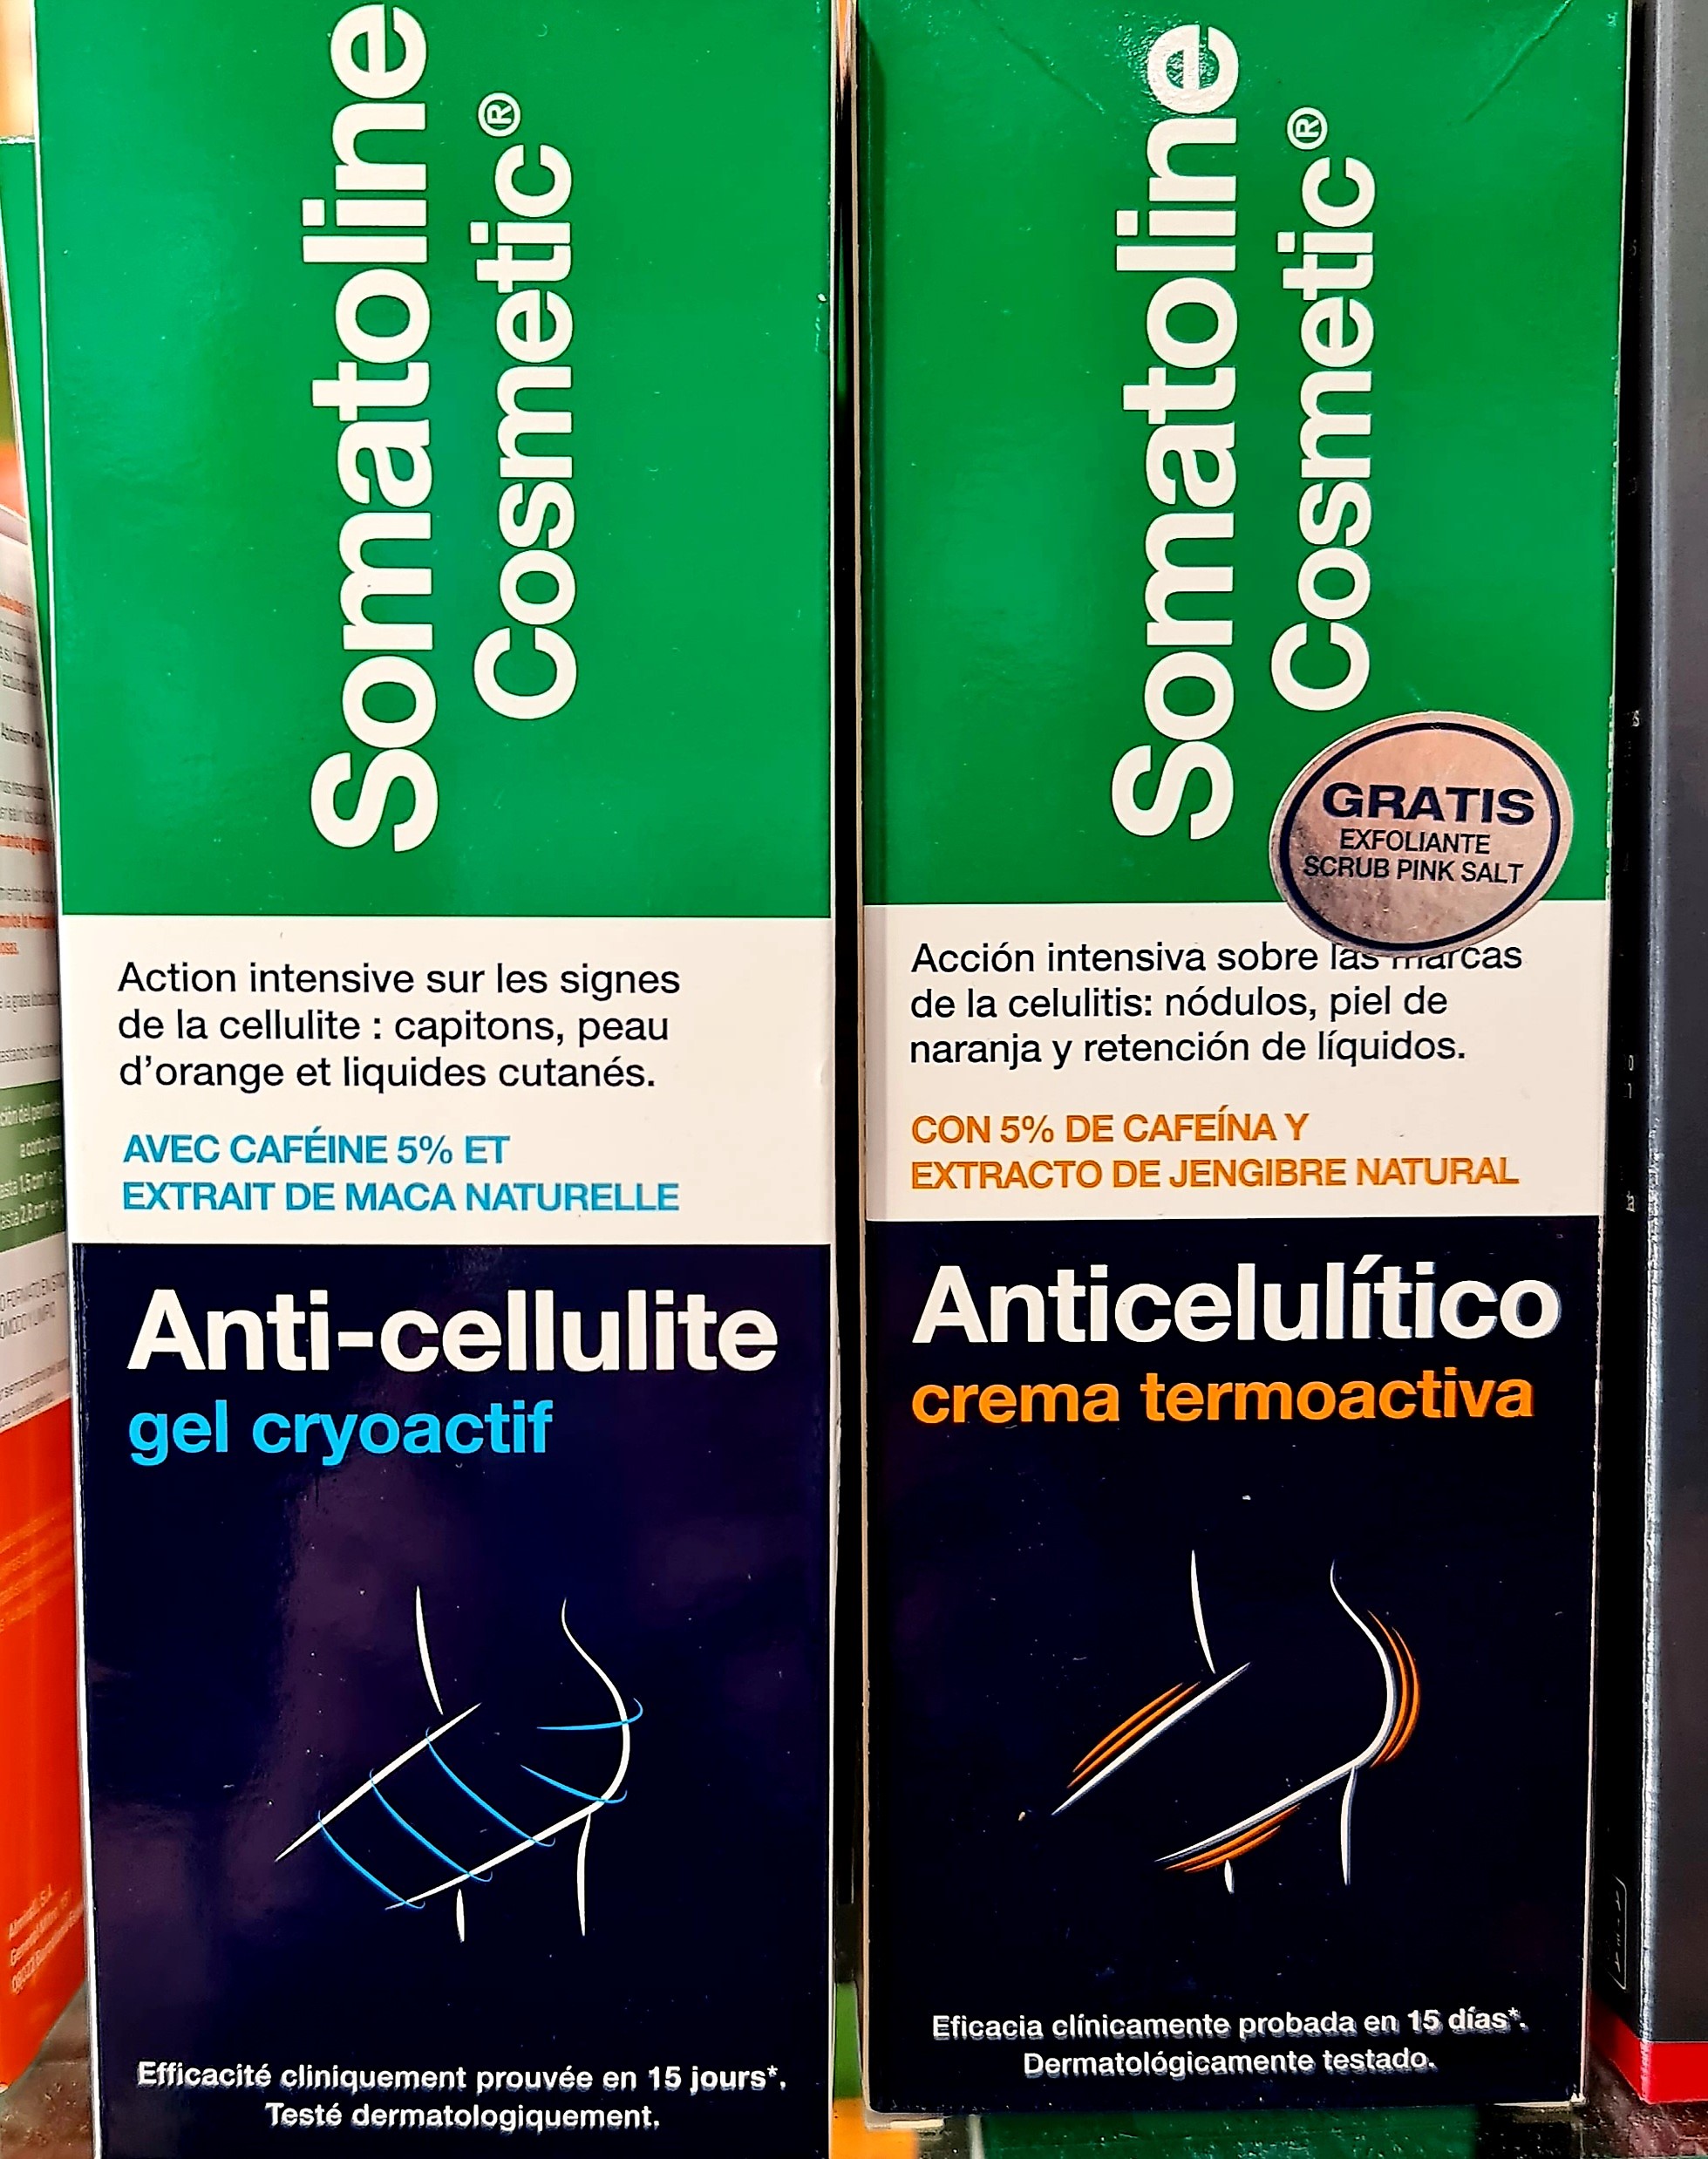 Somatoline Cosmetic Anticelulítico Gel Crioactivo 250 ml es un tratamiento especialmente formulado para combatir los signos de celulitis. Contiene una acción intensiva sobre las marcas de la celulitis, nódulos, piel de naranja y retención de líquidos.